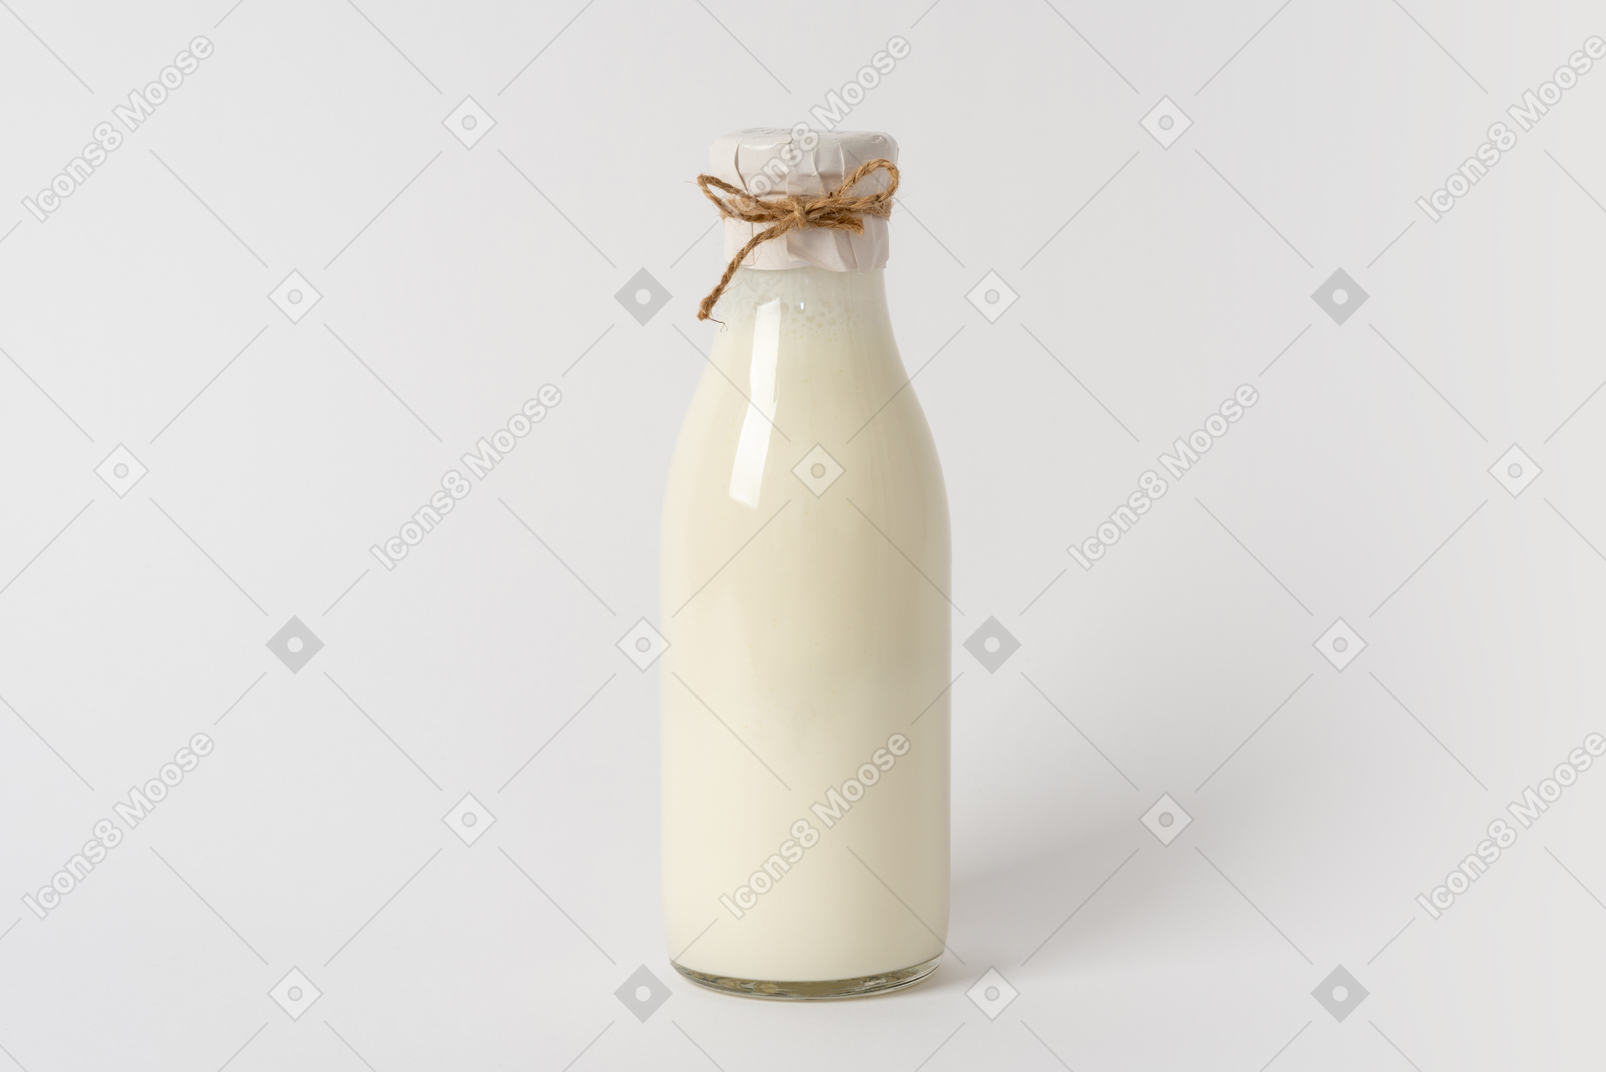 Fresh dairy beverage